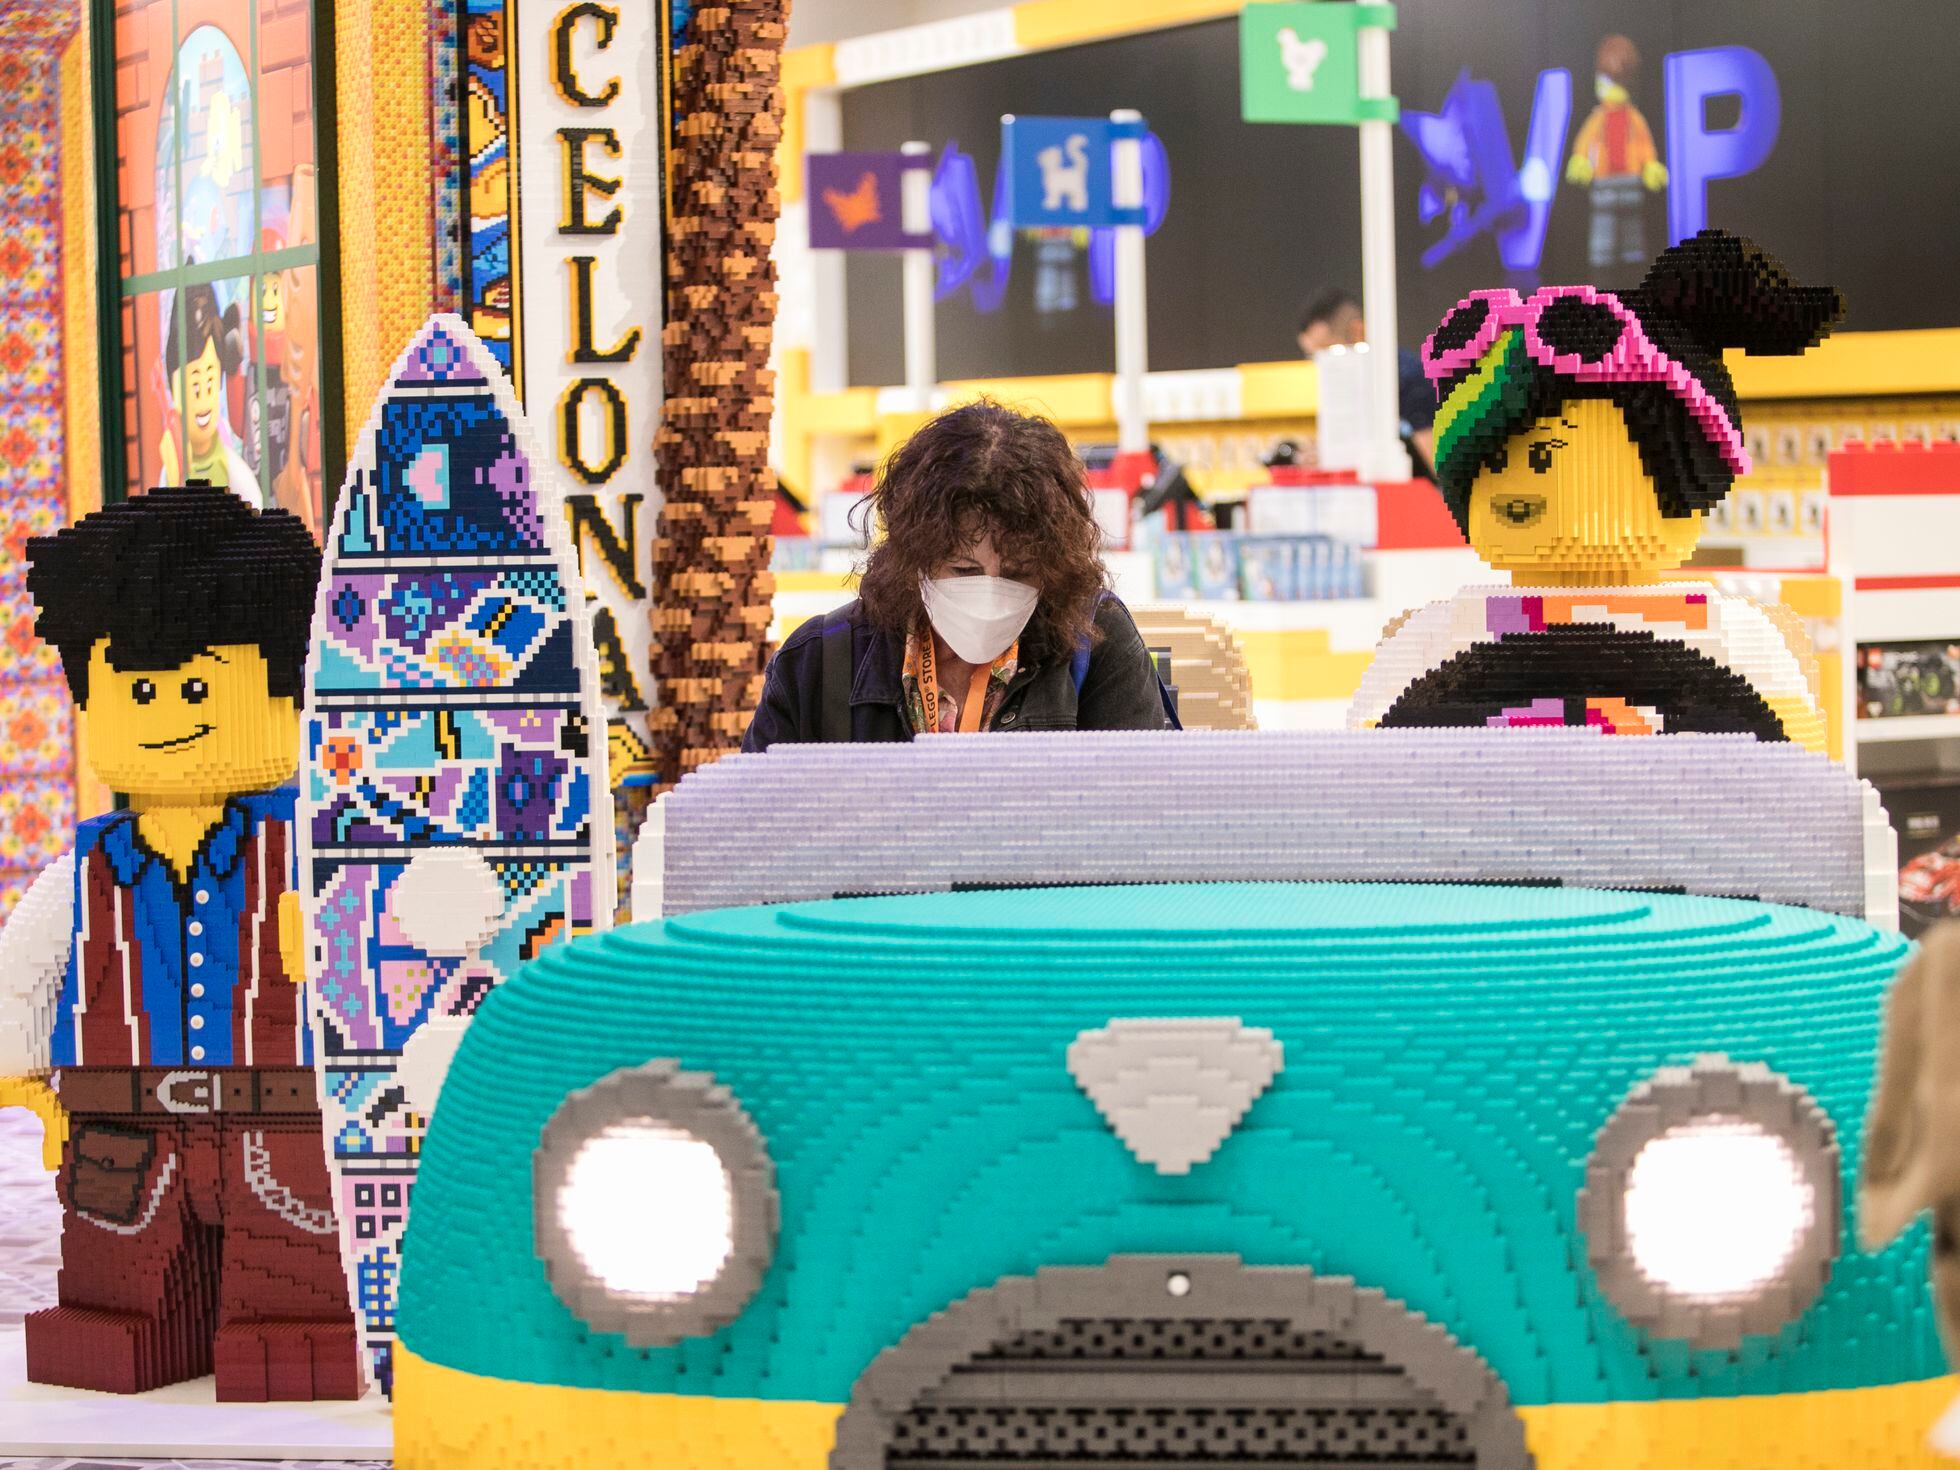 Retratos personalizados con de colores: Lego abre Barcelona su tienda más innovadora de Europa | Digital | Tecnología | EL PAÍS